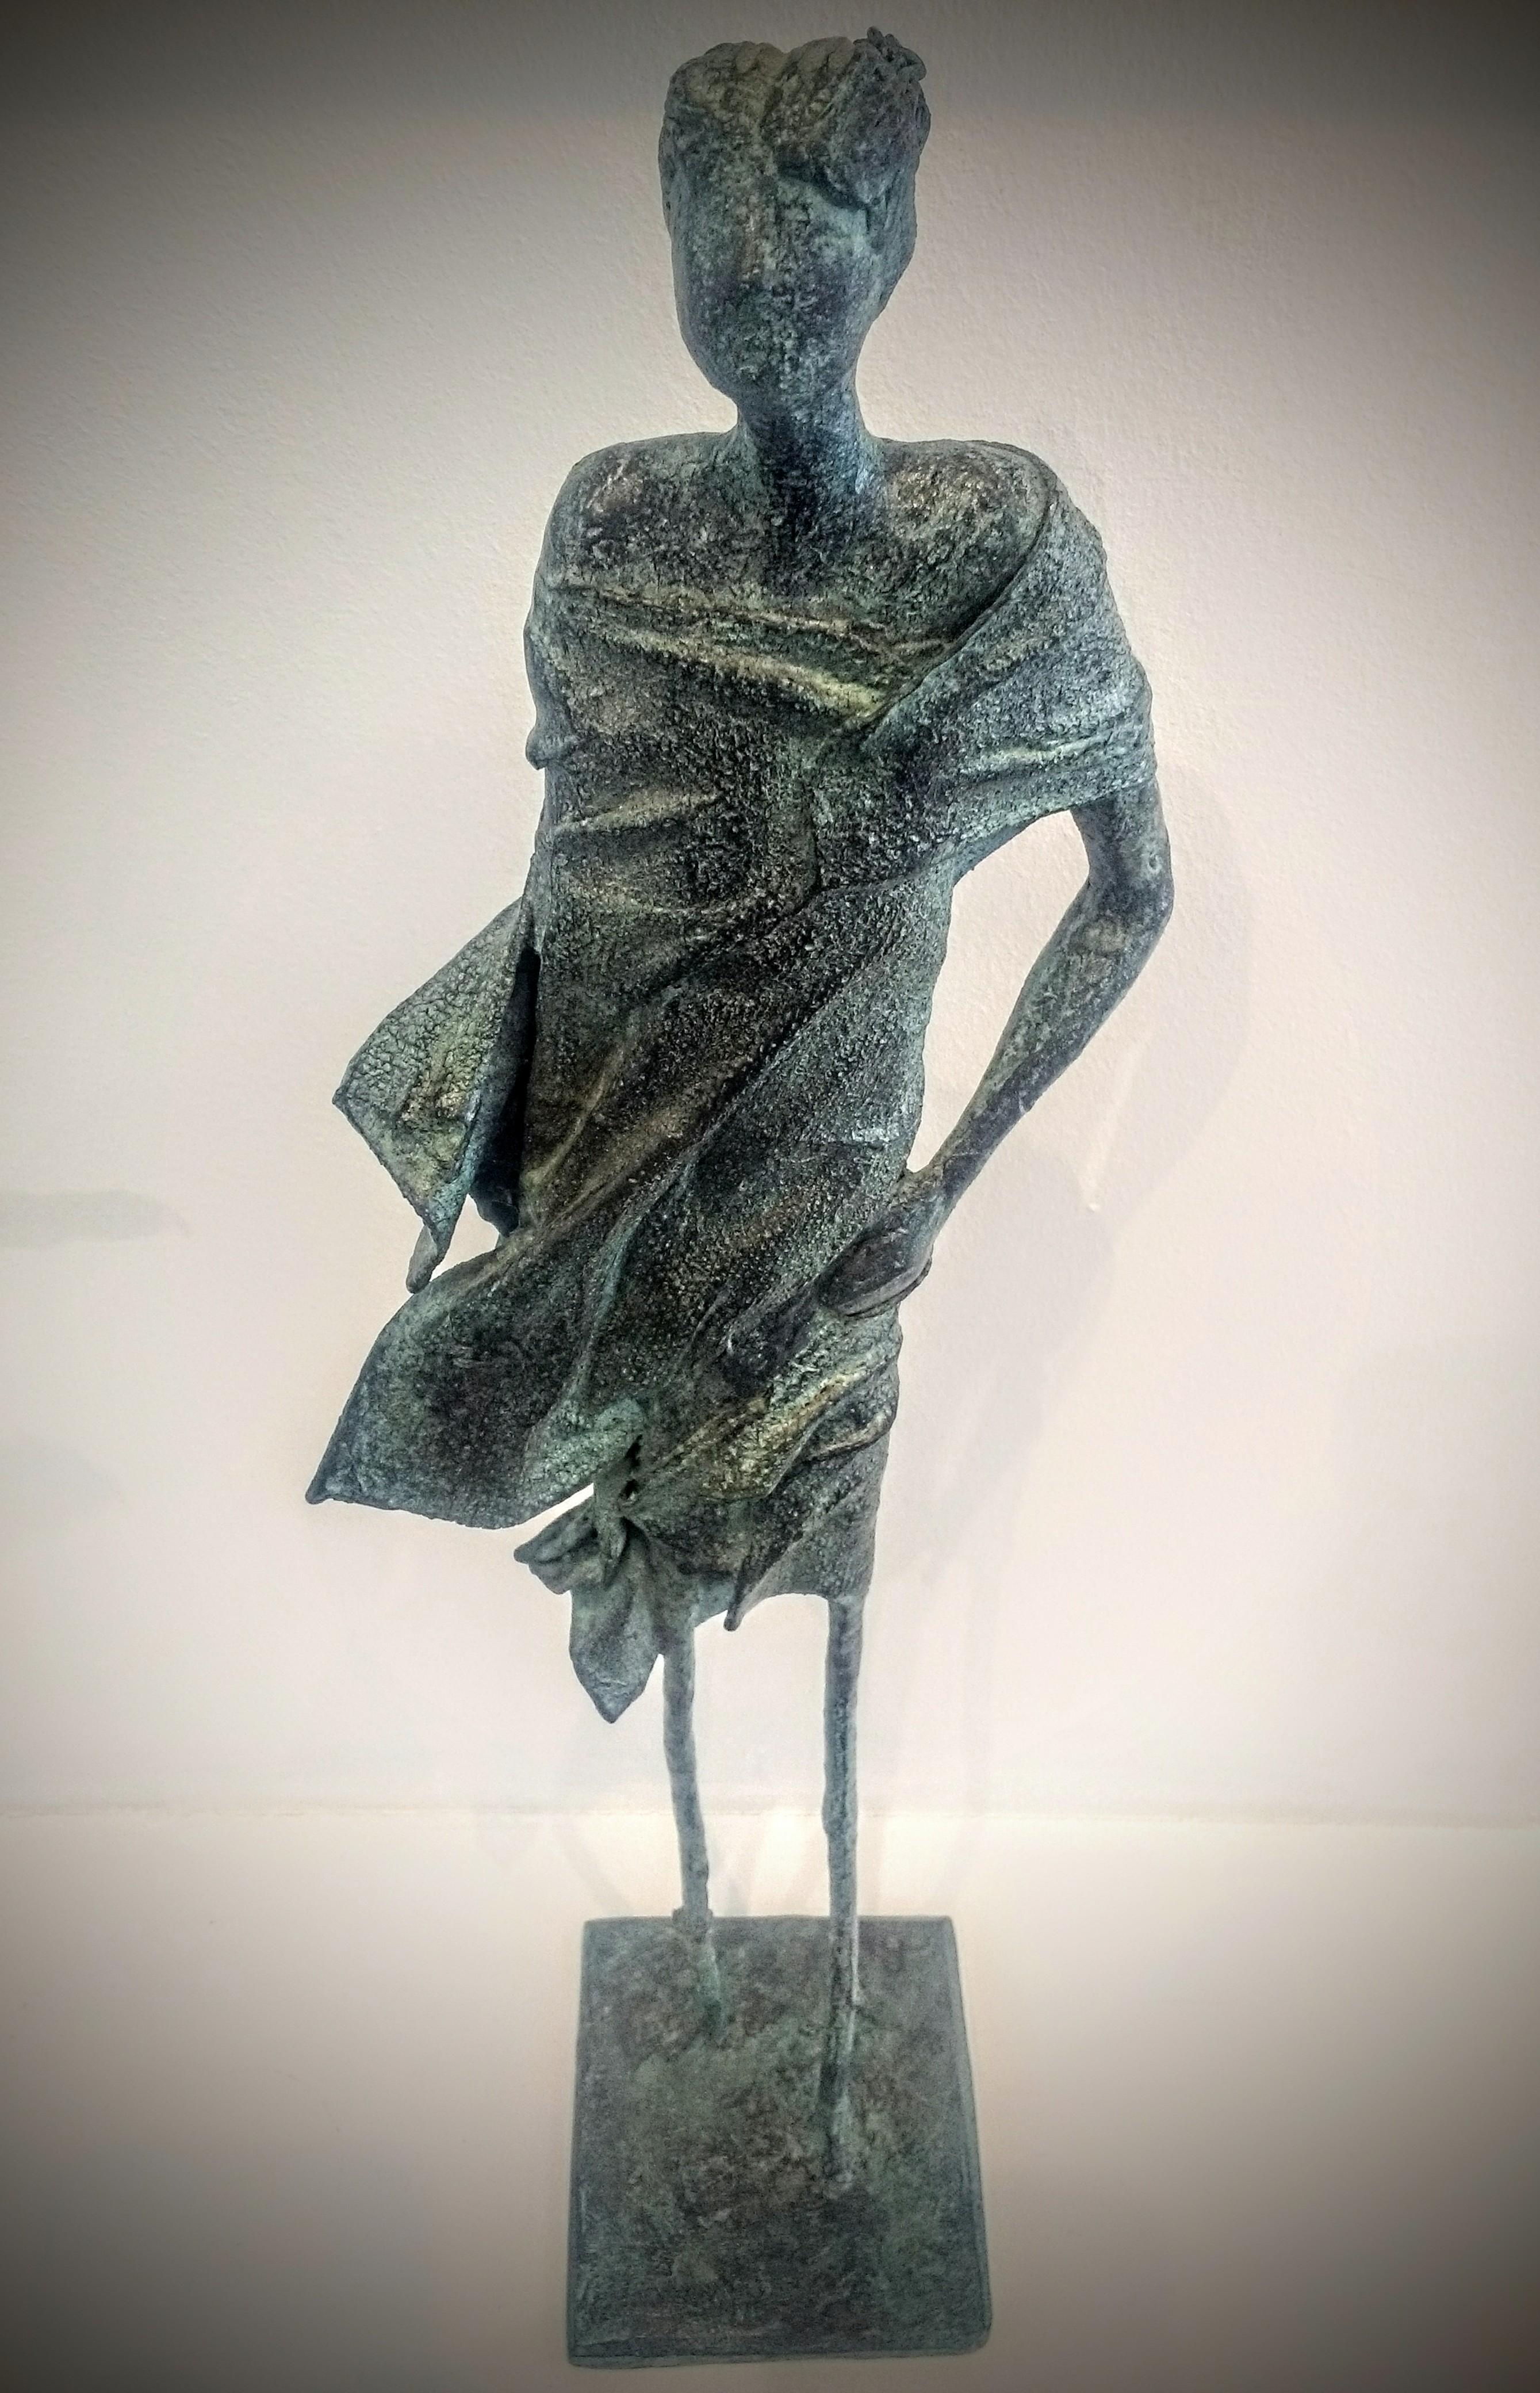 Walking in the Forest - Sculpture figurative en bronze : un personnage fantaisiste - Or Figurative Sculpture par Anke Birnie